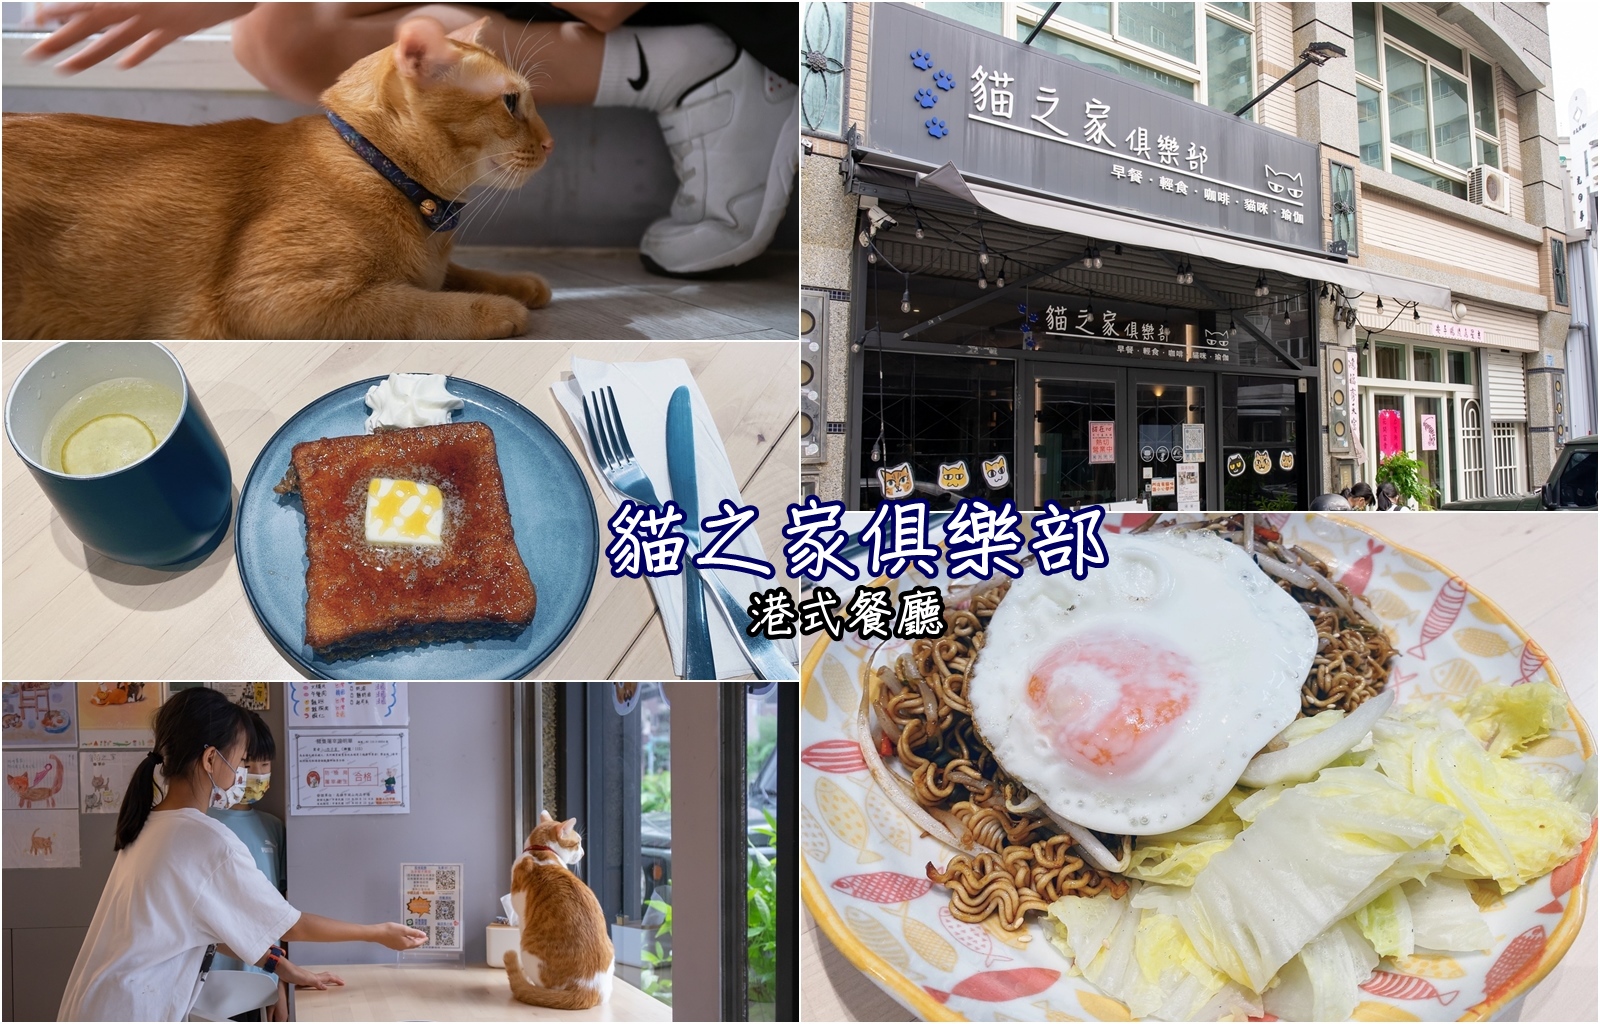 貓之家俱樂部 懷舊港式平價餐廳 跟貓店長一起享受用餐時光